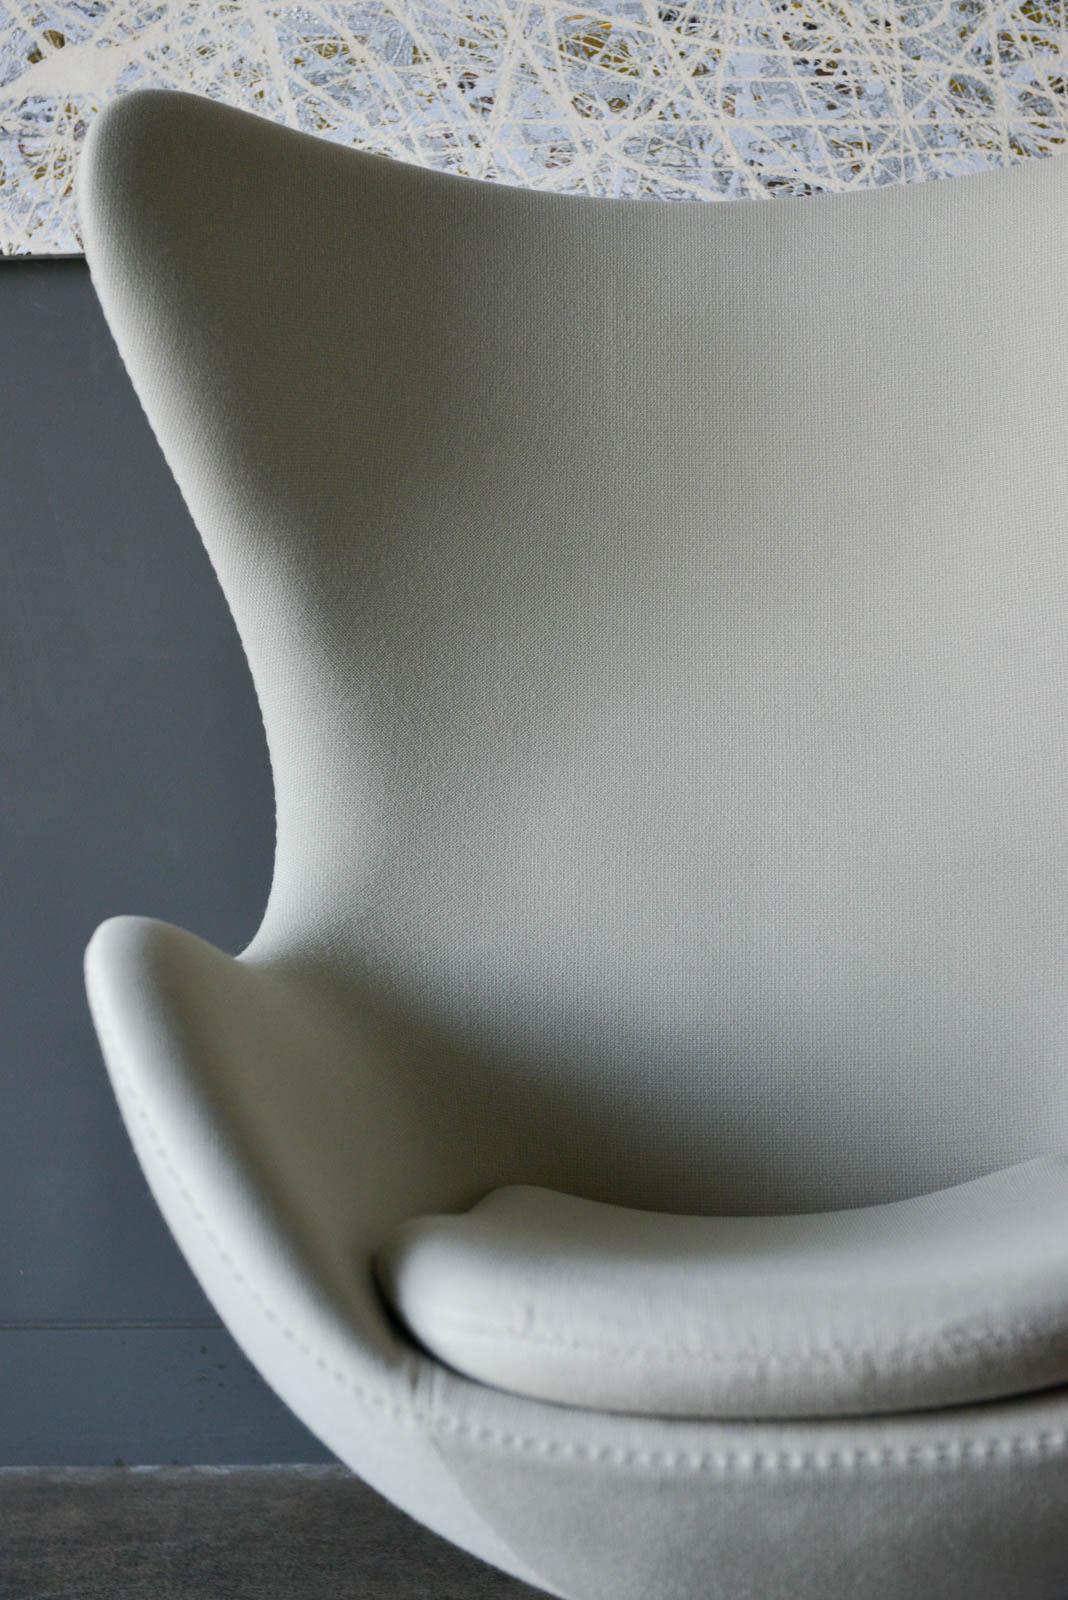 Contemporary Arne Jacobsen for Fritz Hansen Egg Chair, 1958